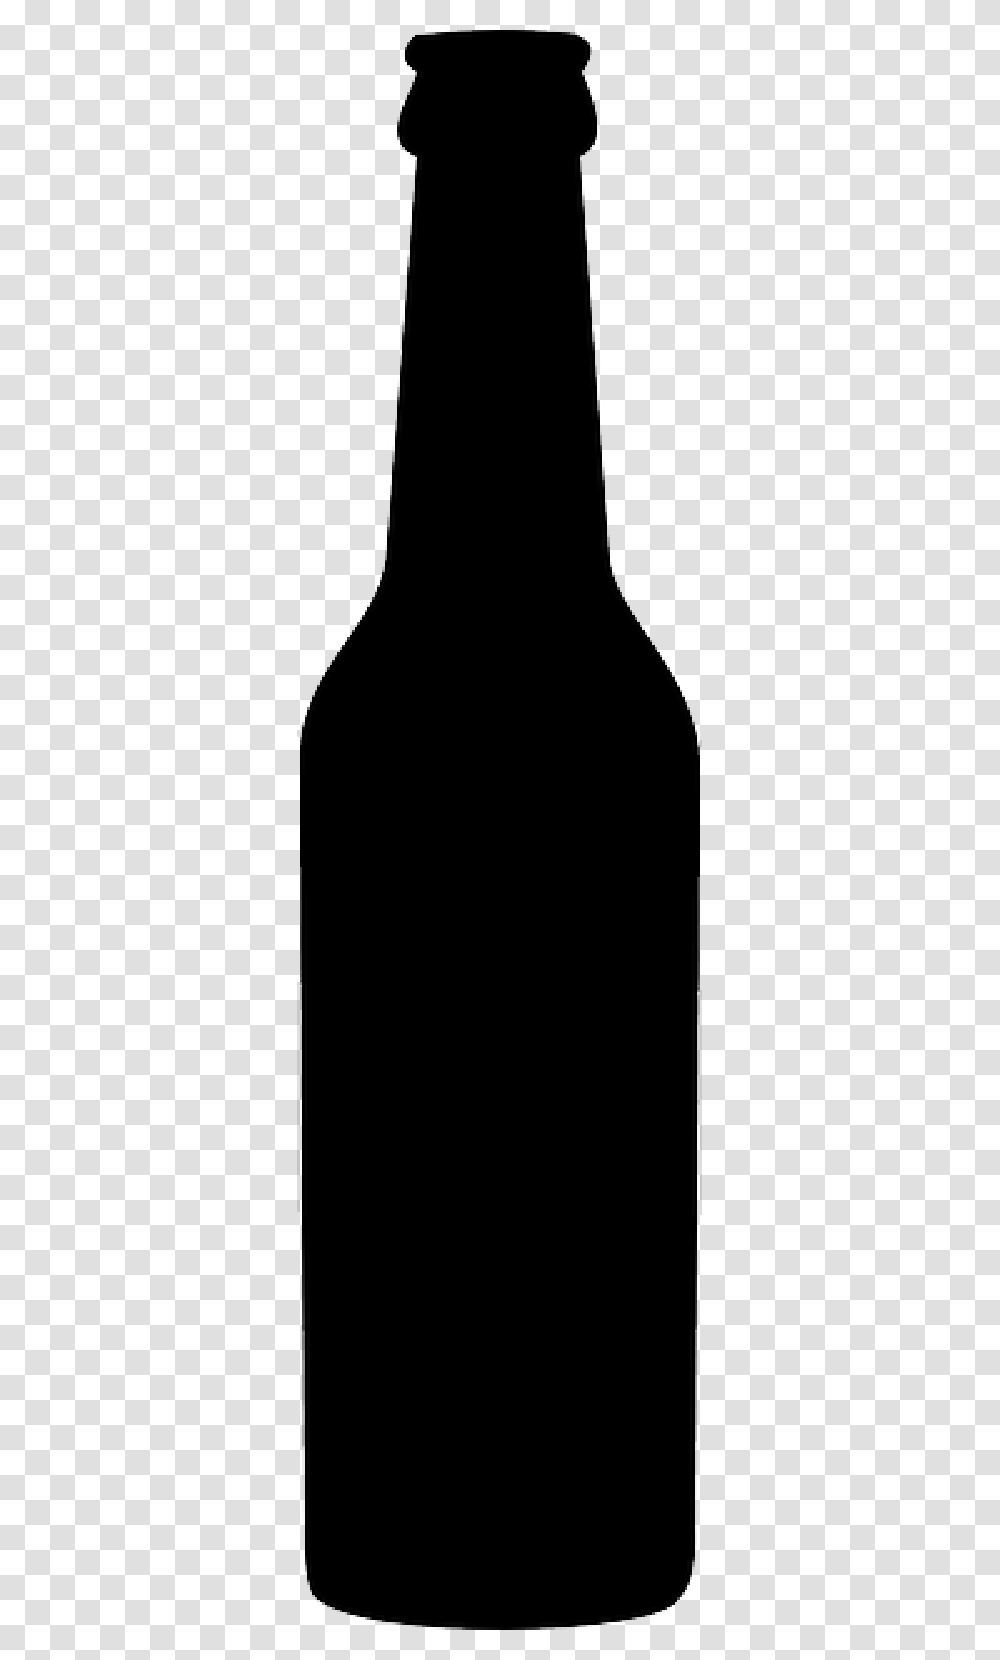 Beer Bottle Clip Art, Beverage, Drink, Alcohol, Wine Transparent Png